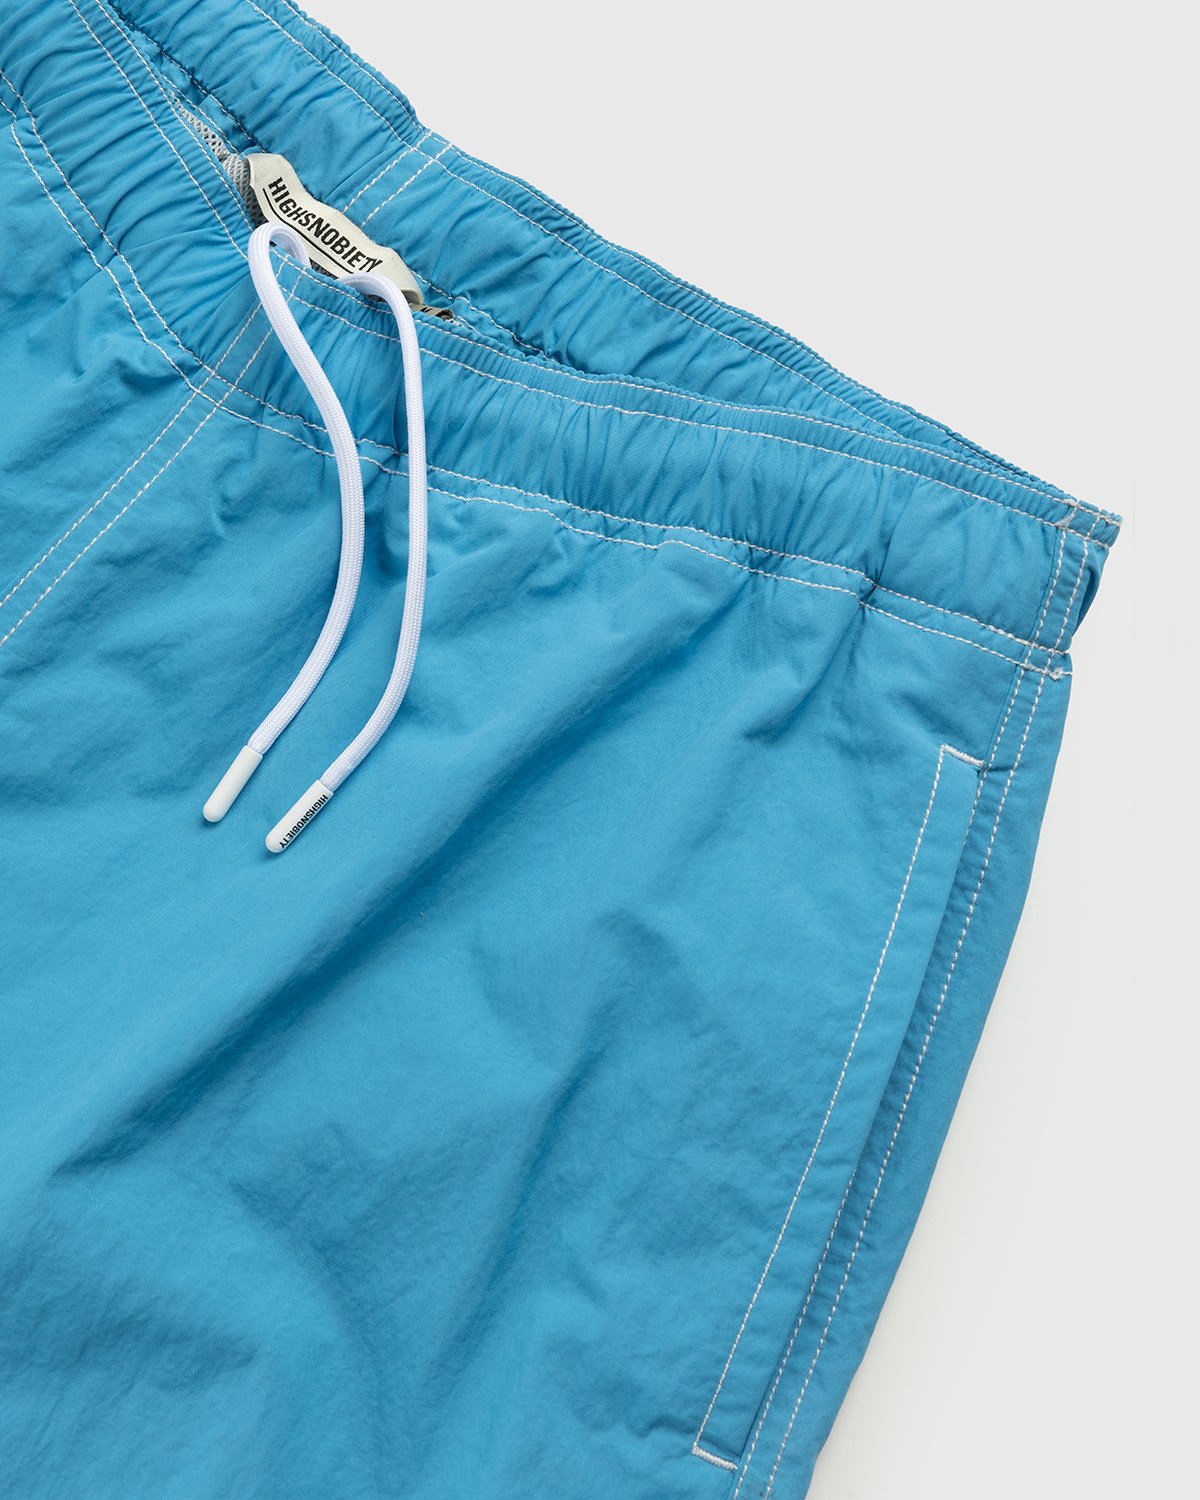 Highsnobiety - Contrast Brushed Nylon Water Shorts Blue - Clothing - Blue - Image 6